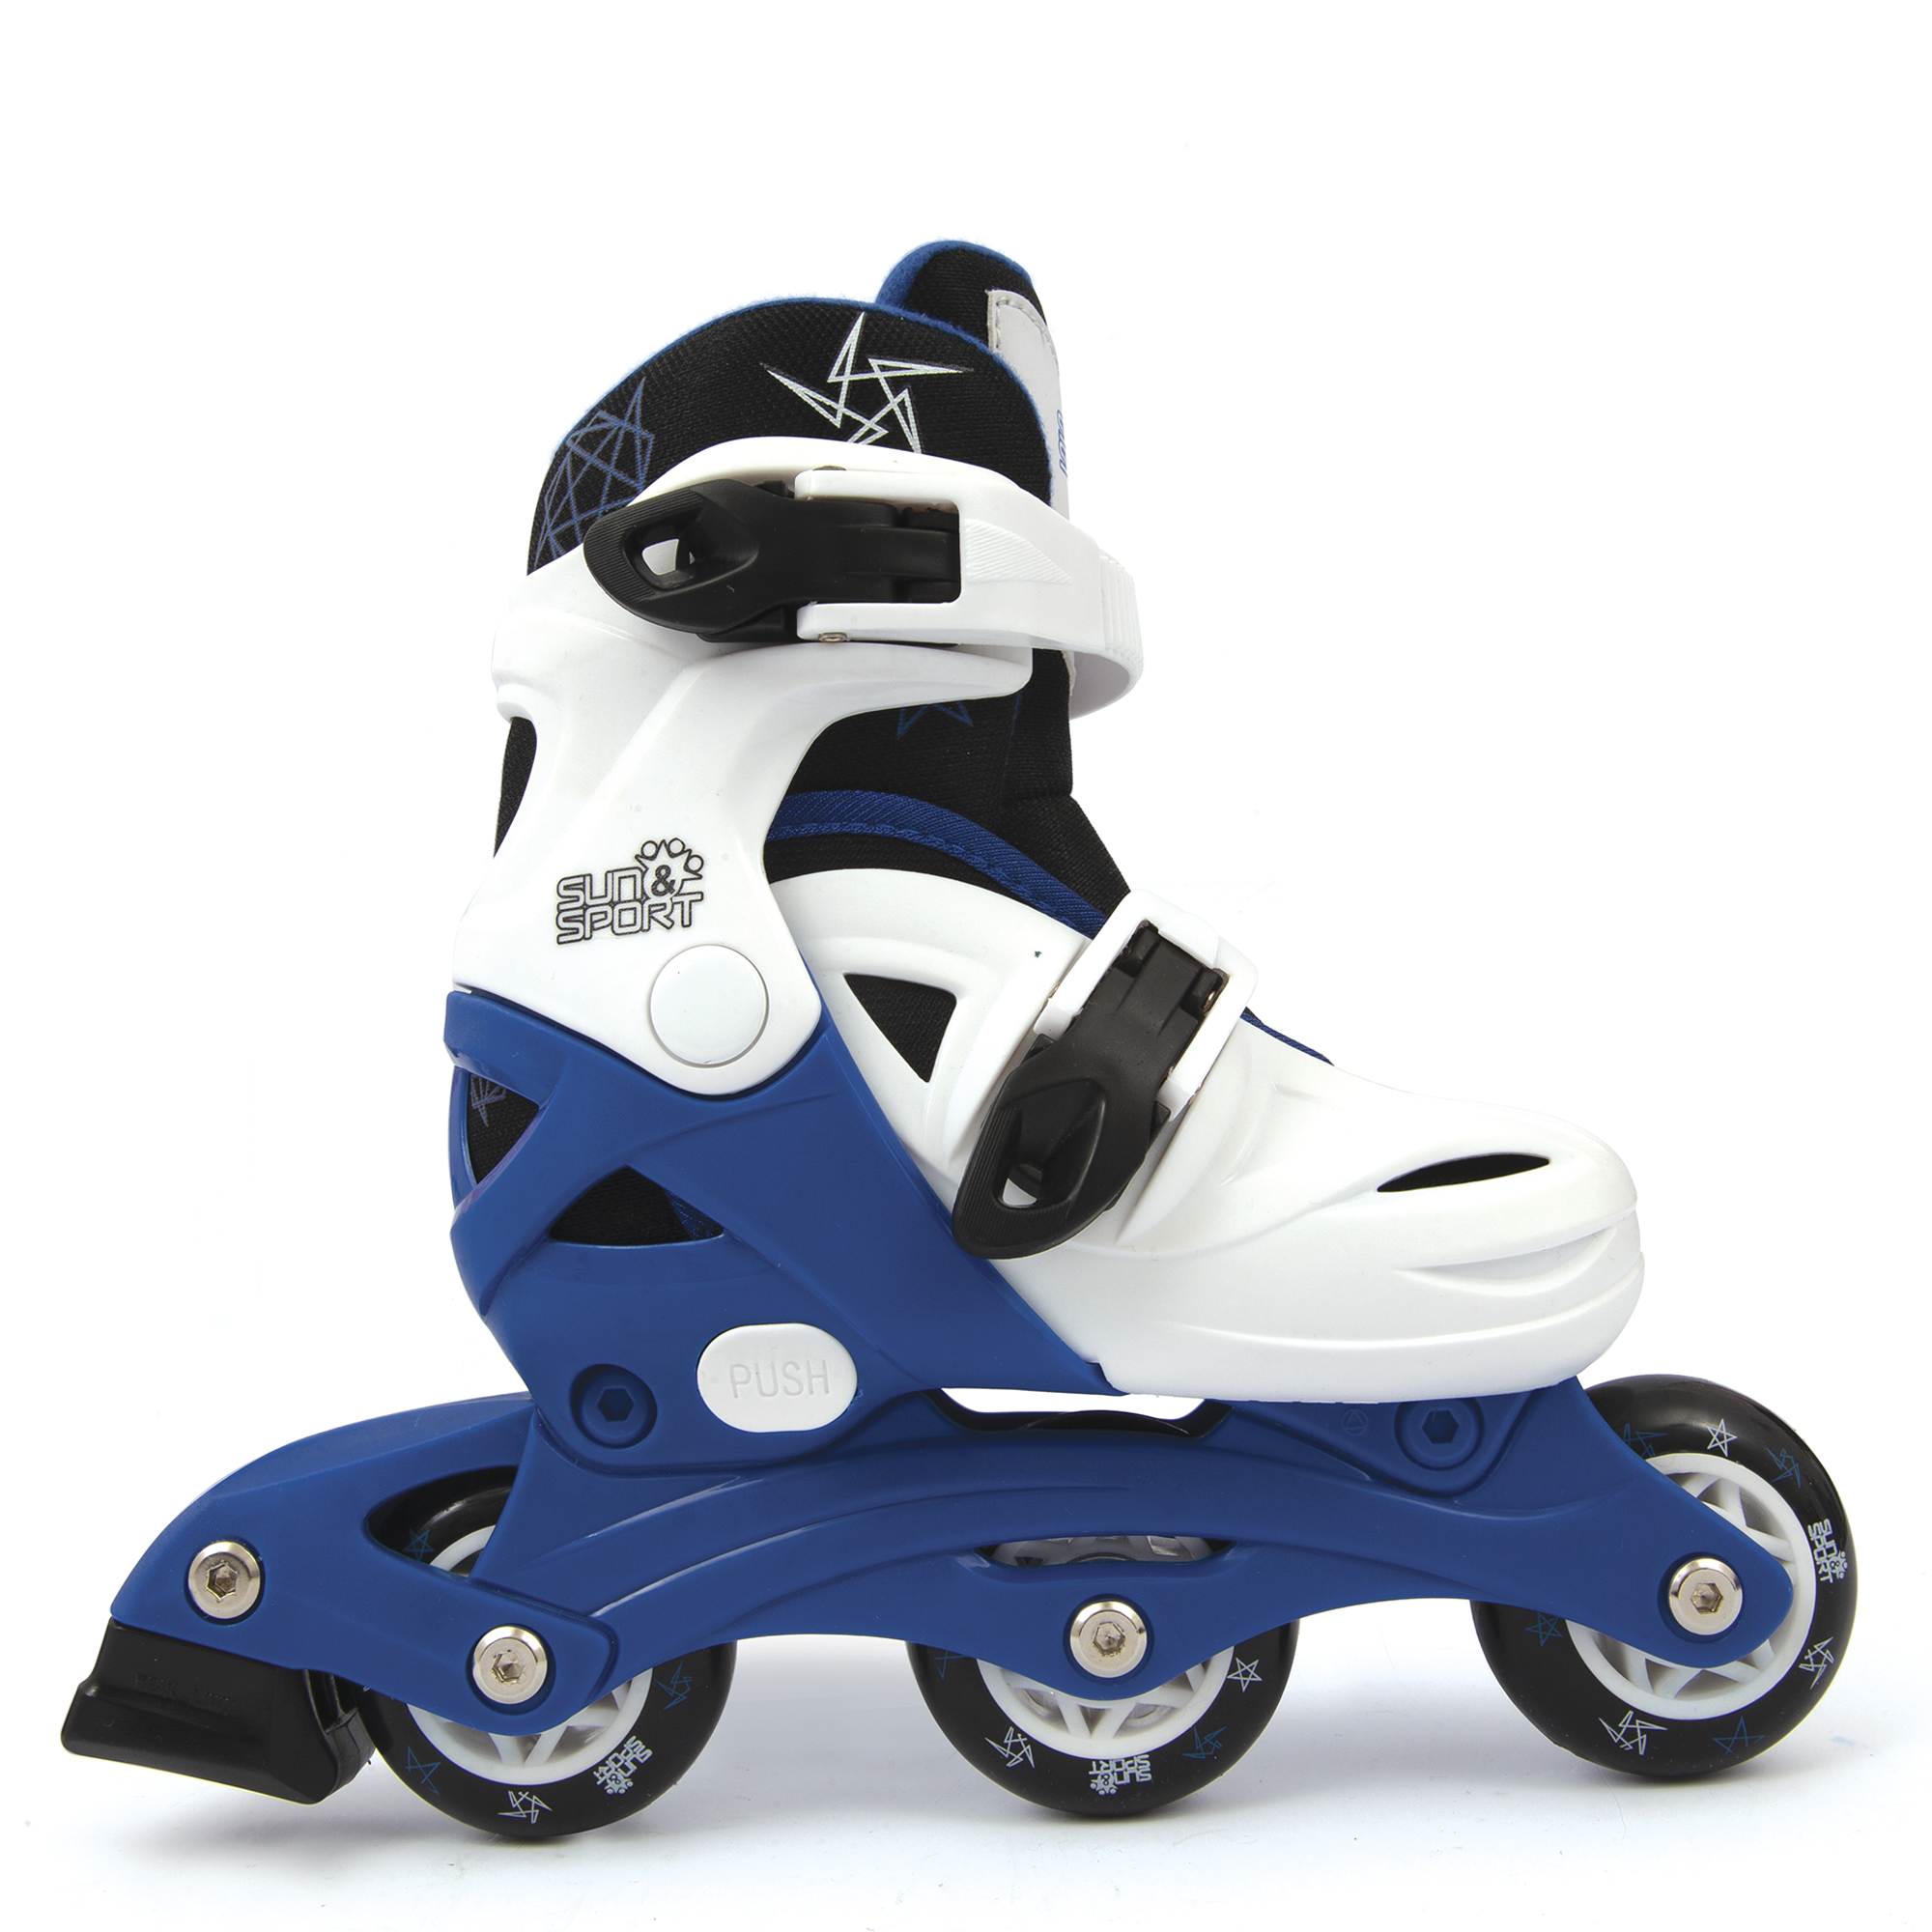 Pattini a 3 ruote regolabili con freno posteriore - misure da 26 a 30 per bambini- disponibile in blu e rosa - SUN&SPORT